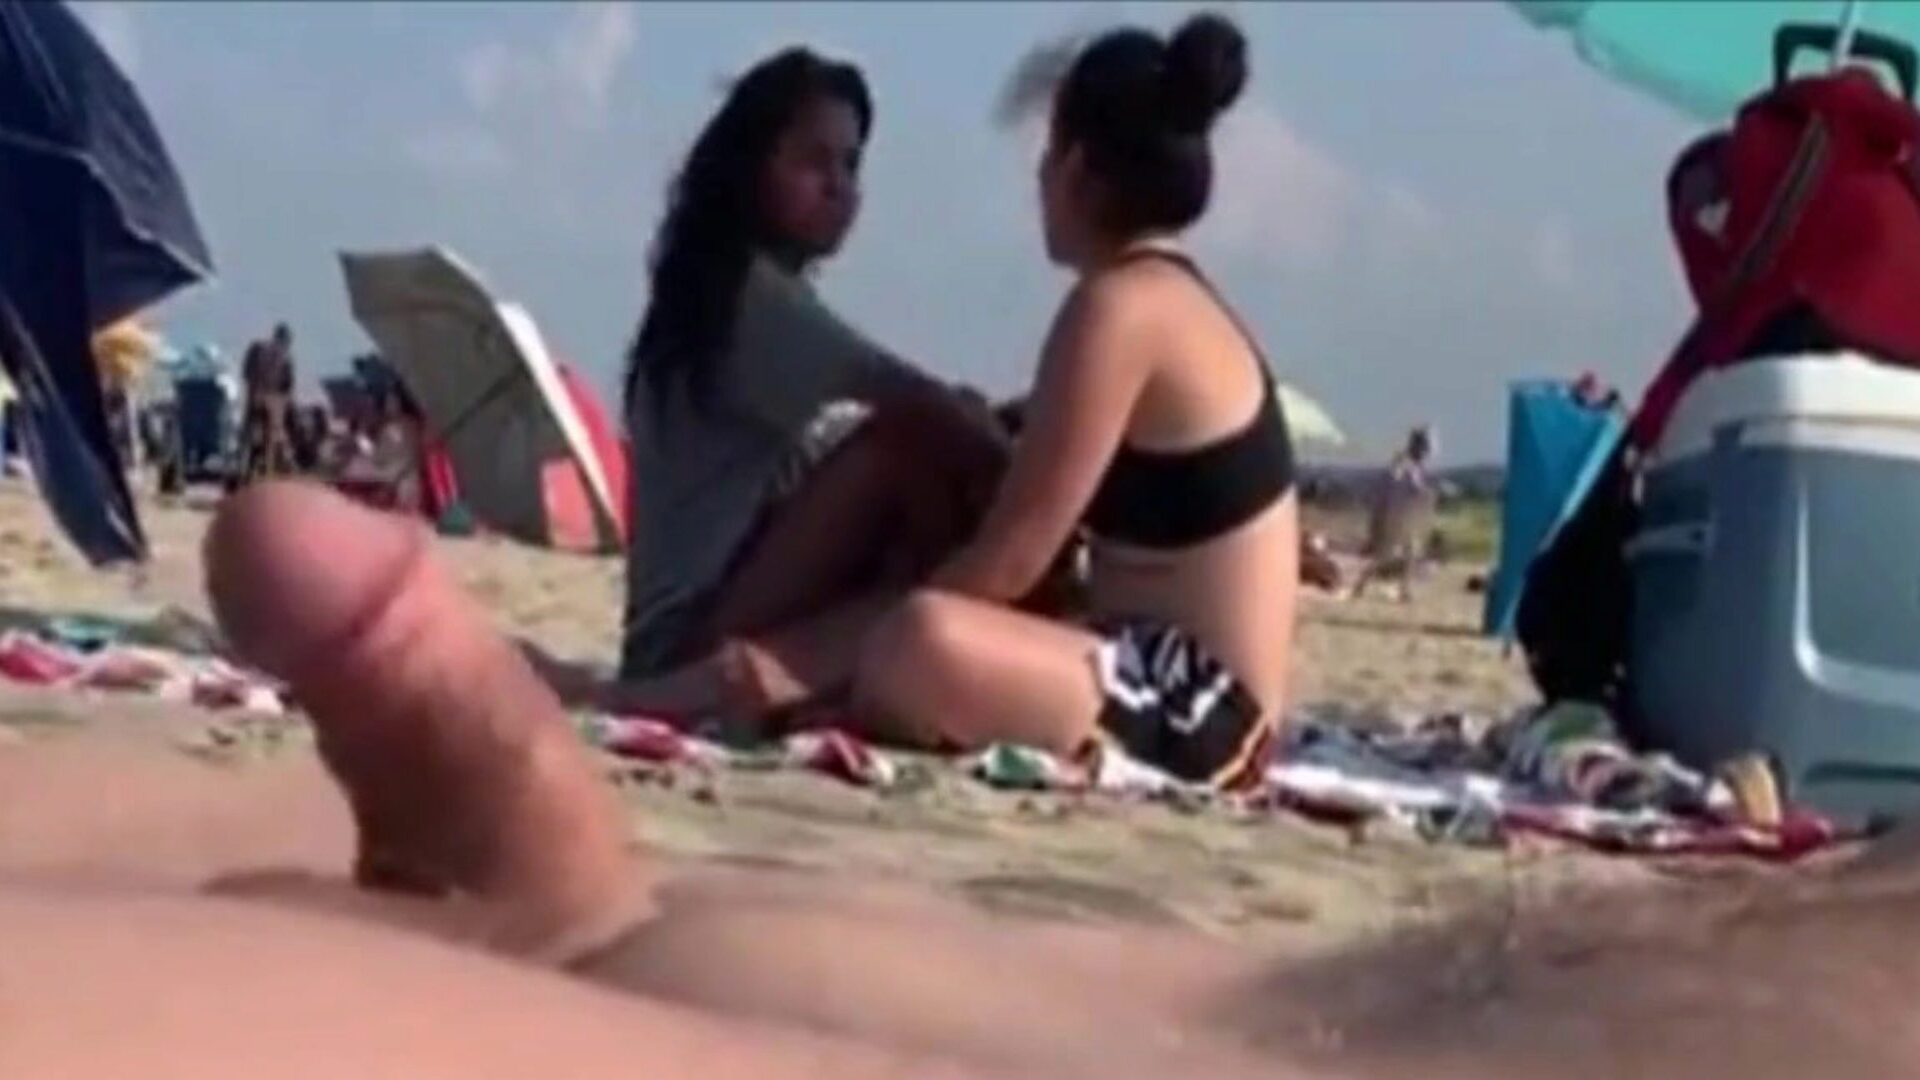 due ragazze stanno osservando la mia erezione su una spiaggia pubblica due bellezze che mi assistono al mio wang le lasciano andare ..